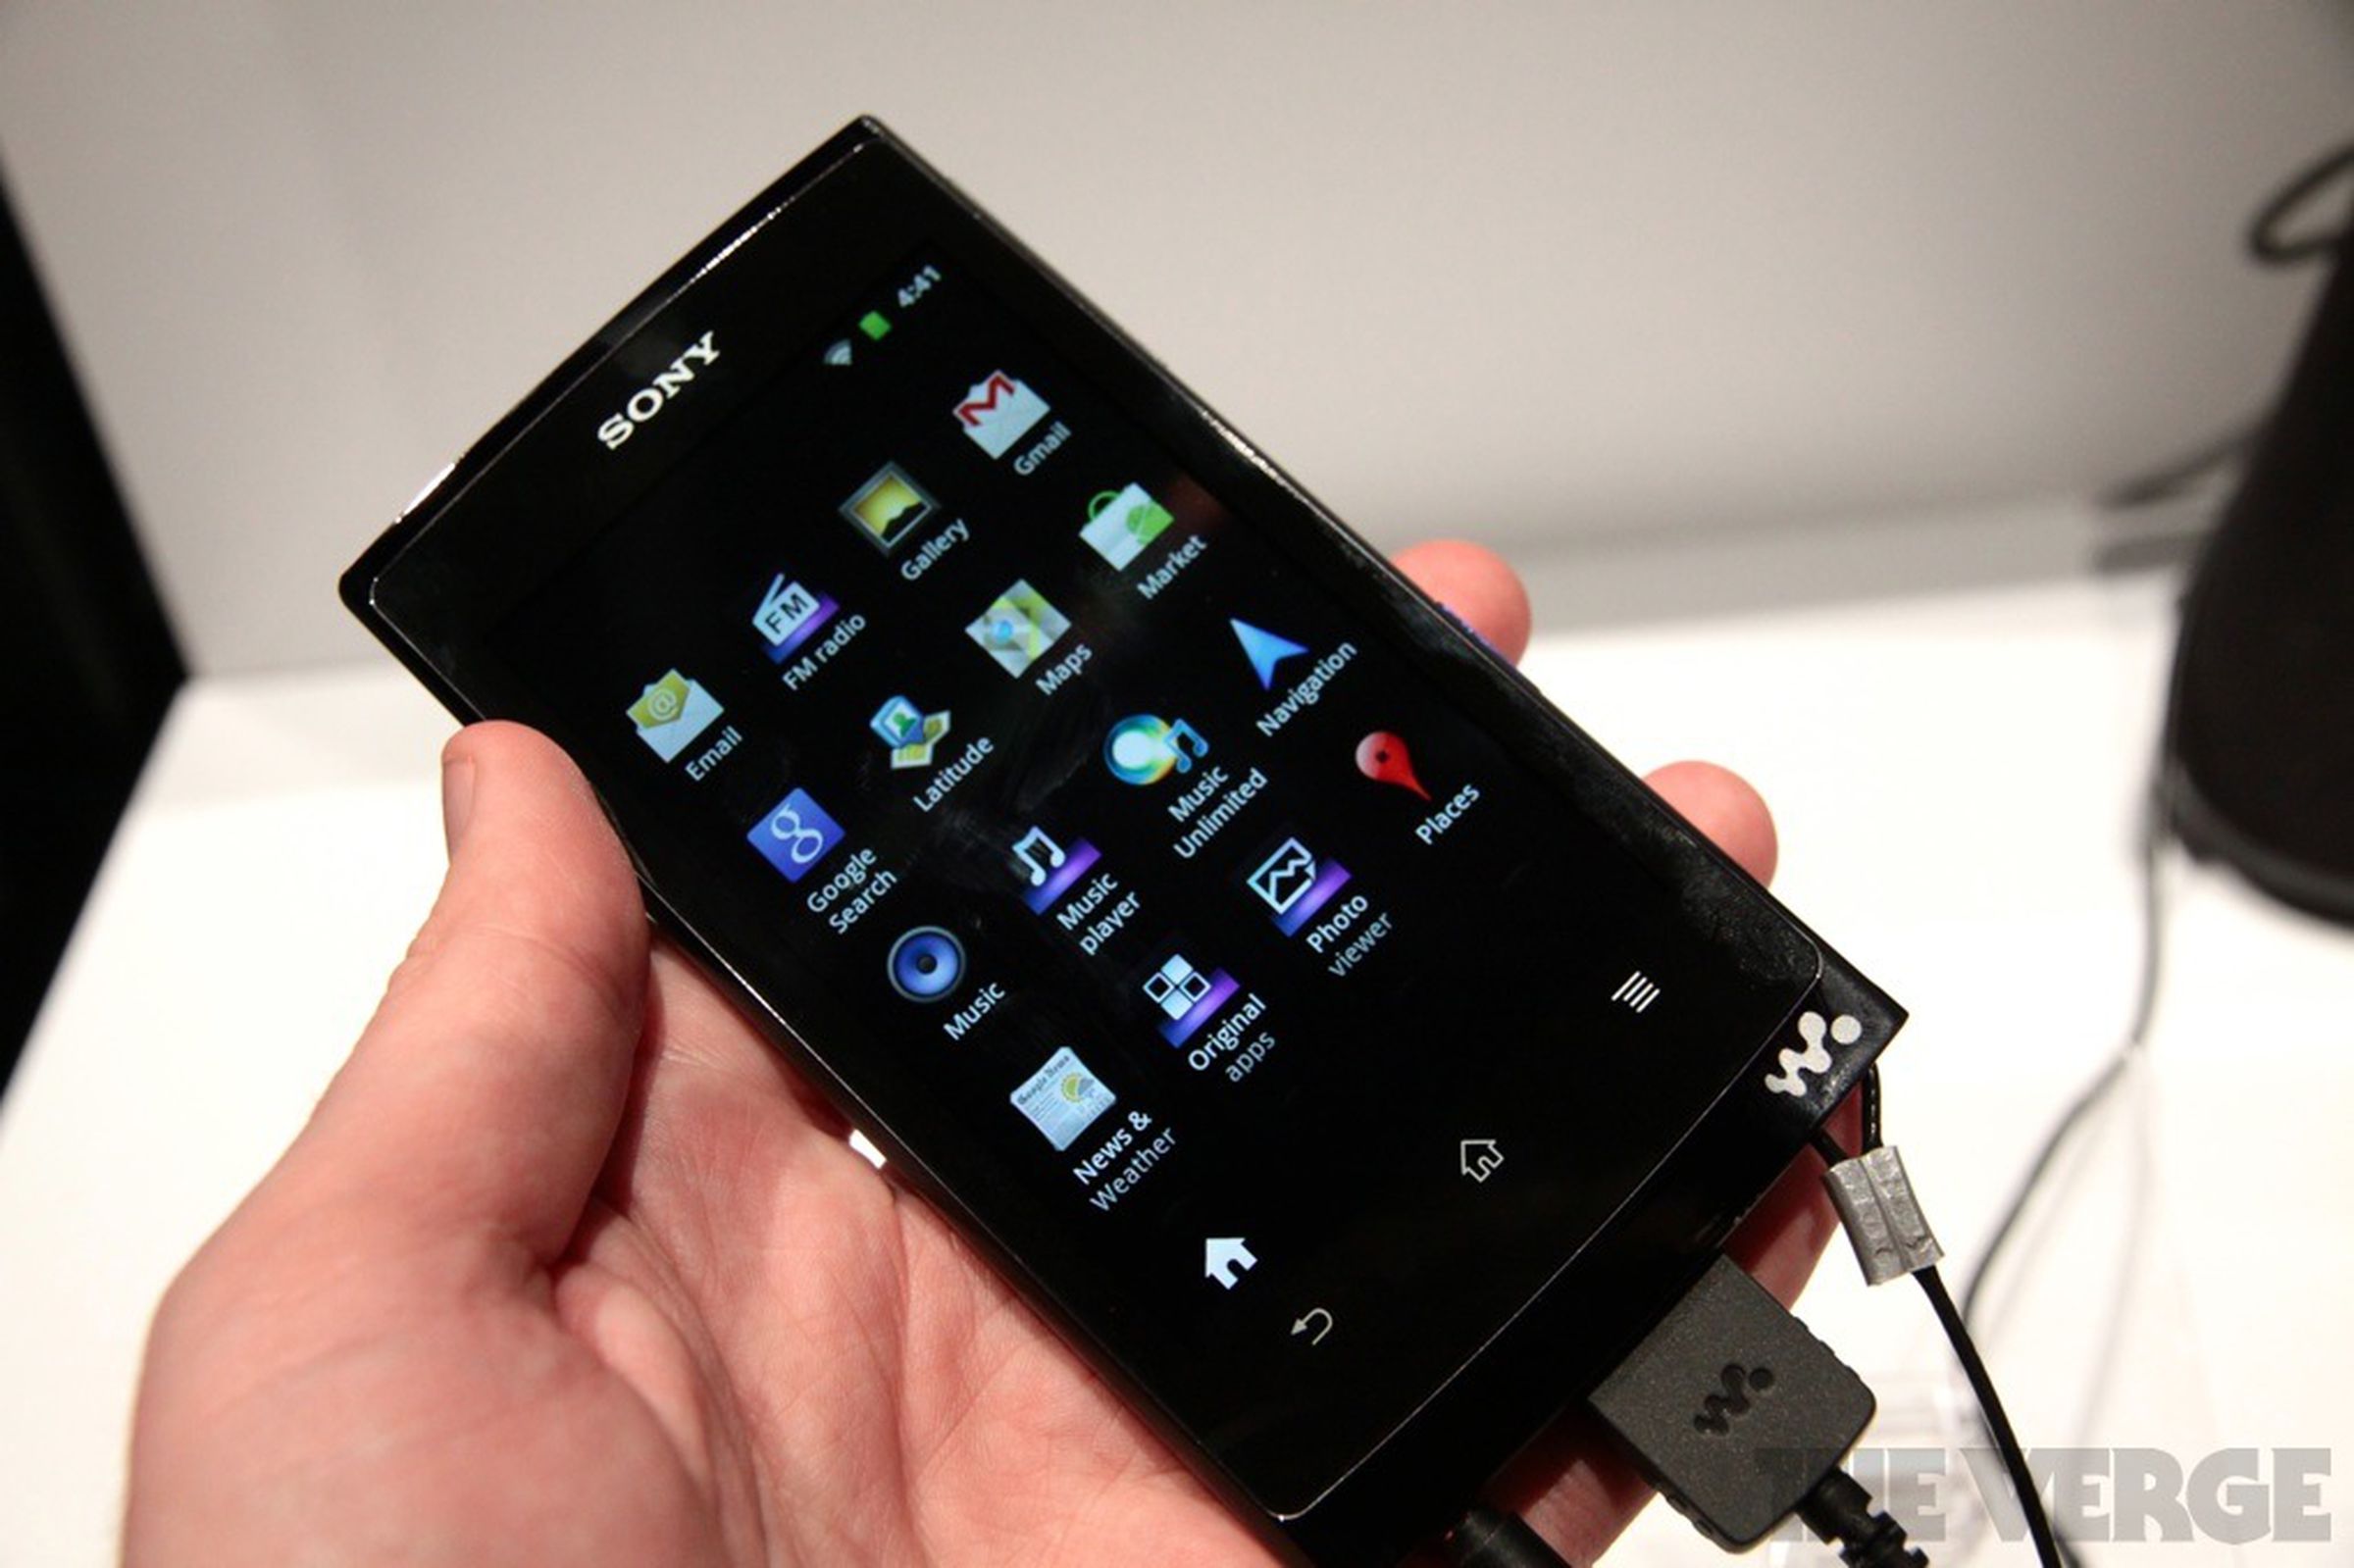 Sony Walkman Z1000 media player hands-on photos